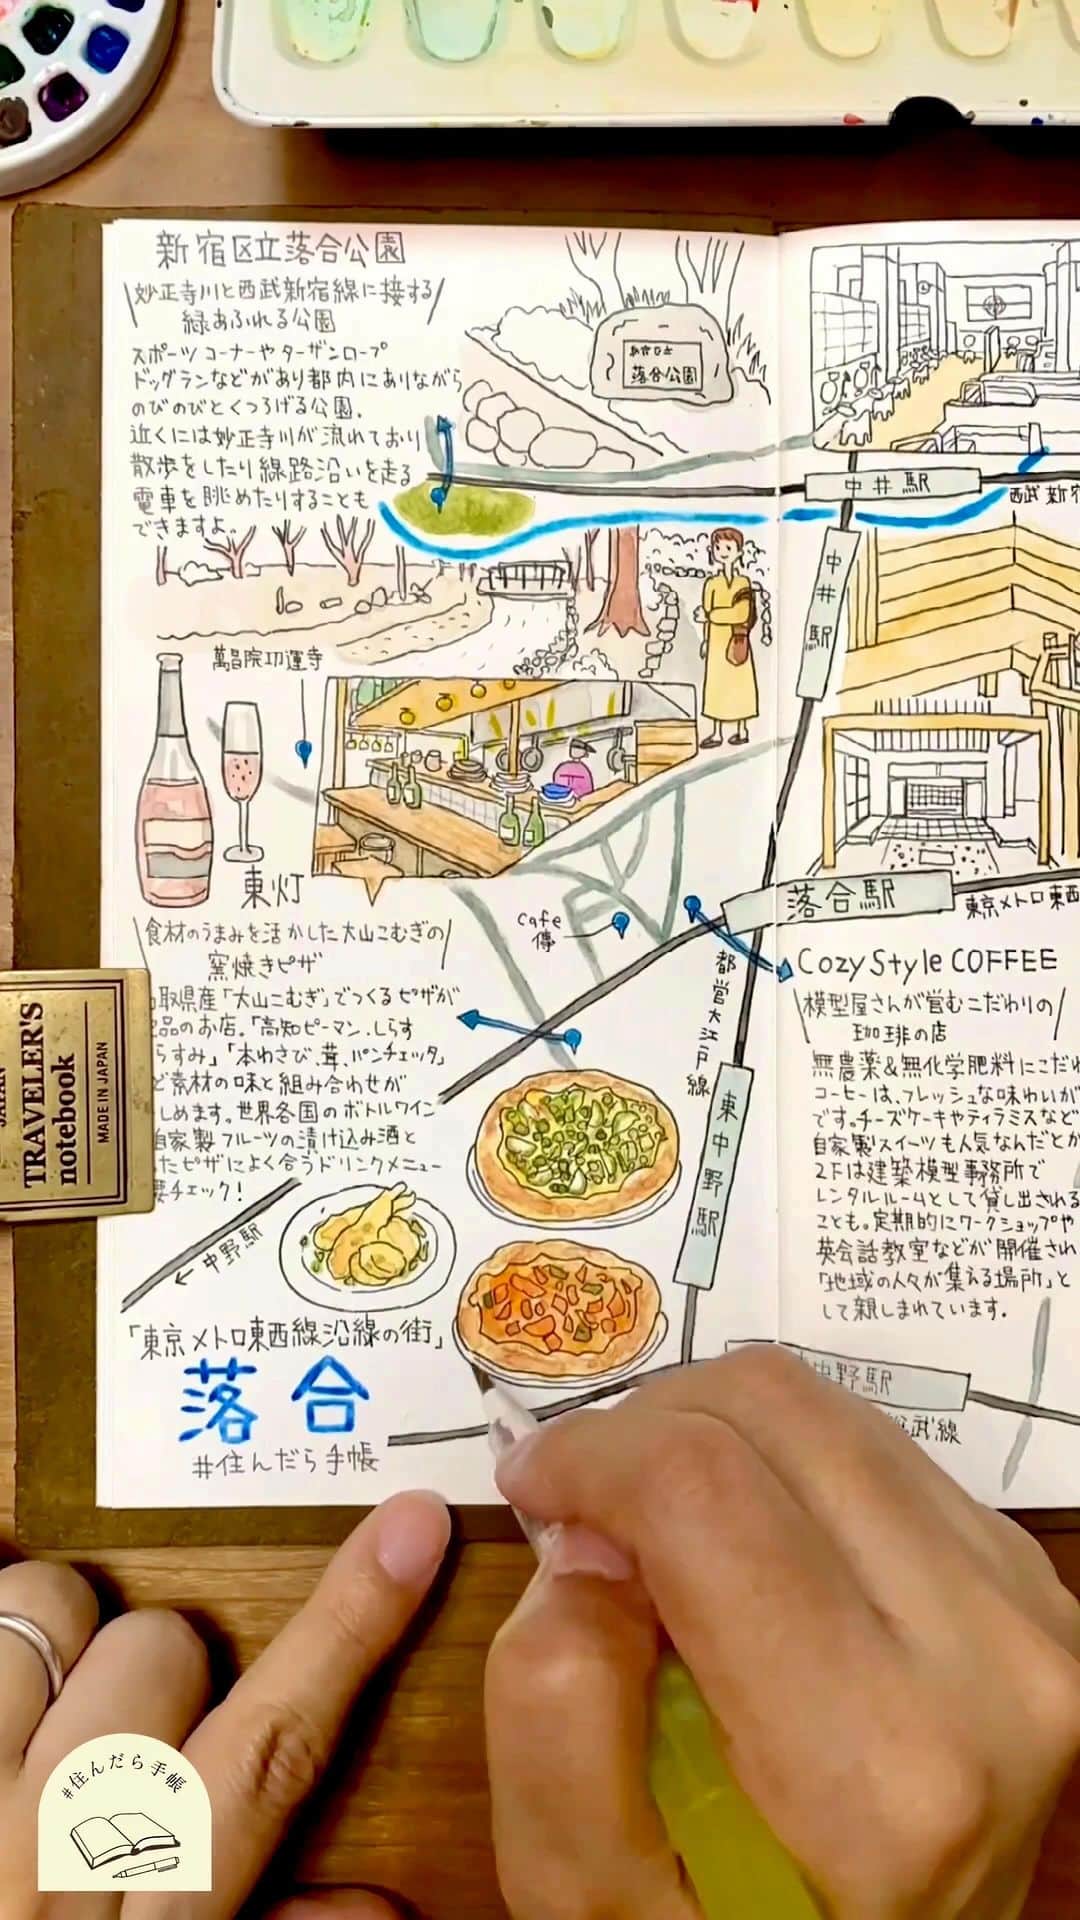 chintai_lifeのインスタグラム：「今回は『#東京メトロ東西線沿線の街』#落合 🚃のメイキング動画📽✨他の街はこちら👉@sundara_techo ⁡ 落合は、都心へのアクセスの良さと落ち着いた雰囲気を兼ね備える街。  駅から少し歩いた場所には「新宿区立落合公園」や神田川があり、自然を身近に感じることができるのも、魅力のひとつ🌳  駅前の山手通りや早稲田通りなどはにぎやかな雰囲気ですが、駅から少し離れれば、閑静な住宅街が広がっています。落ち着いた暮らしができそうです😌💭  落合駅の近くに大型商業施設はありませんが、10分ほど歩けば近隣の東中野駅直結の「アトレヴィ東中野-atre-」があります。生活雑貨店や書店、ブーランジュリカフェなどバラエティ豊かなお店が入っているので、毎日でも通いたくなりますね🛒 ⁡ あなたが『落合』で行ってみたいスポットをコメント欄で教えてね！ __ マップ に登場するスポットは、  こだわりが随所に感じられる銭湯 #松本湯 ♨  妙正寺川と西武新宿線に接する緑あふれる公園 新宿区立 #落合公園 🏞️  食材のうまみを活かした大山こむぎの窯焼きピザ #東灯 🍕  模型屋さんが営むこだわり珈琲の店 CozyStyle COFFEE ☕ __  ✏️使用画材✏️ #トラベラーズノート サクラクレパス #ピグマ　02、03、05mm #ウィンザーアンドニュートン　固形水彩絵具 #ターナー色彩　水彩絵具 #ファーバーカステル (色鉛筆) ステッドラーウォーターブラシ　中筆、細筆  illustrations by Tamy(@tamytamy2015)  本企画では、あの街に「住んだら？」をテーマに手書きの#イラストマップ を手帳に一発書きして紹介していきます📖✨  完成したイラストマップは、過去の投稿をチェック！ 👉@sundara_techo  ※掲載内容は2023年10月10日次点の情報をもとに制作しています ※新型コロナウイルスの感染拡大防止のため、営業時間の変更・休業の可能性があります。 お出かけの際は公式サイト等でご確認ください  #travelersnotebook #midoritravelersnotebook #CozyStyleCOFFEE」